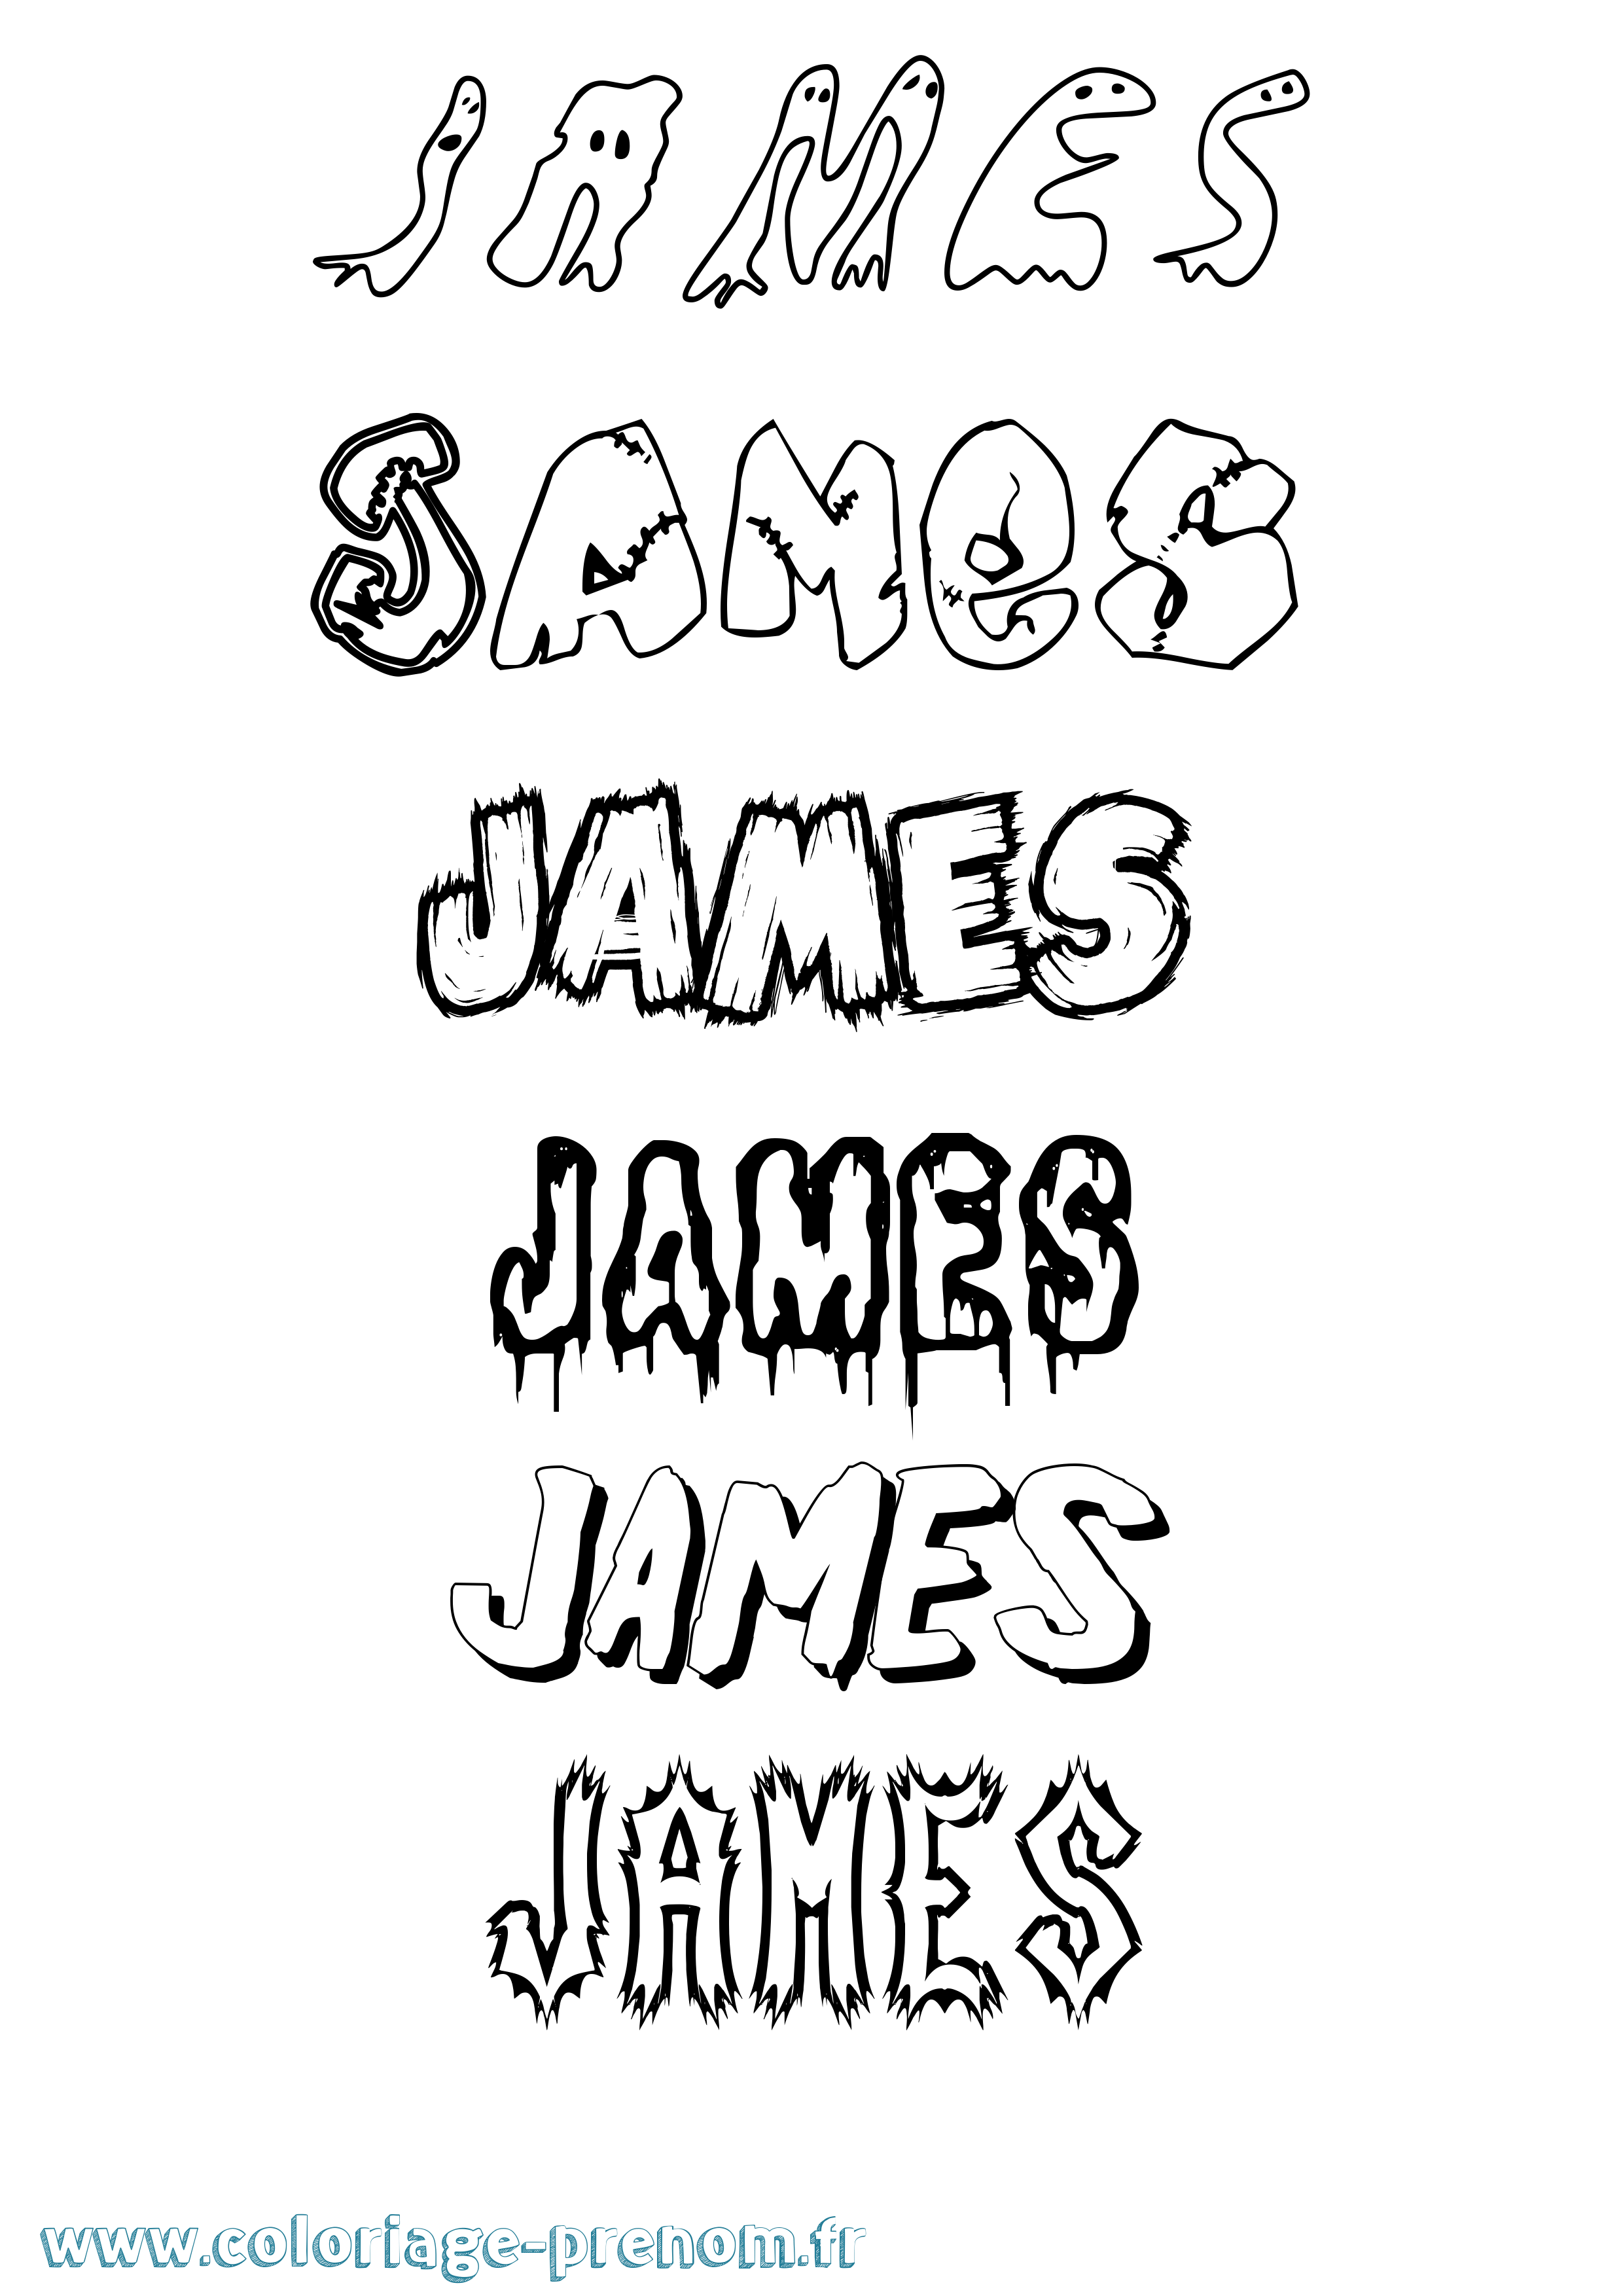 Coloriage prénom James Frisson